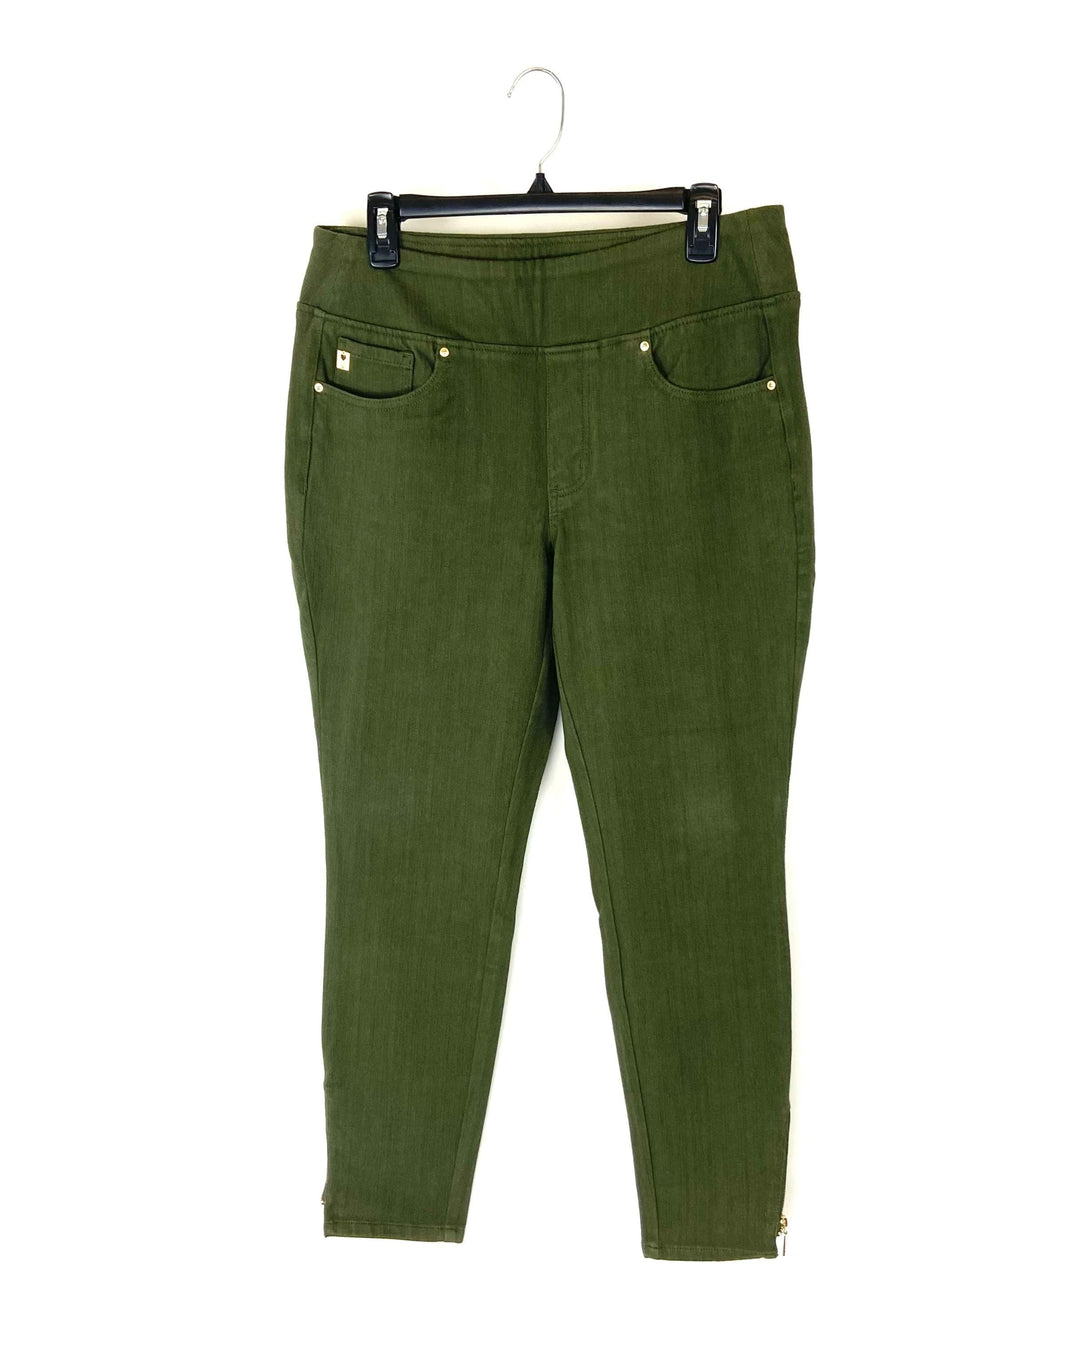 Dark Green Jeans - Size 12/14